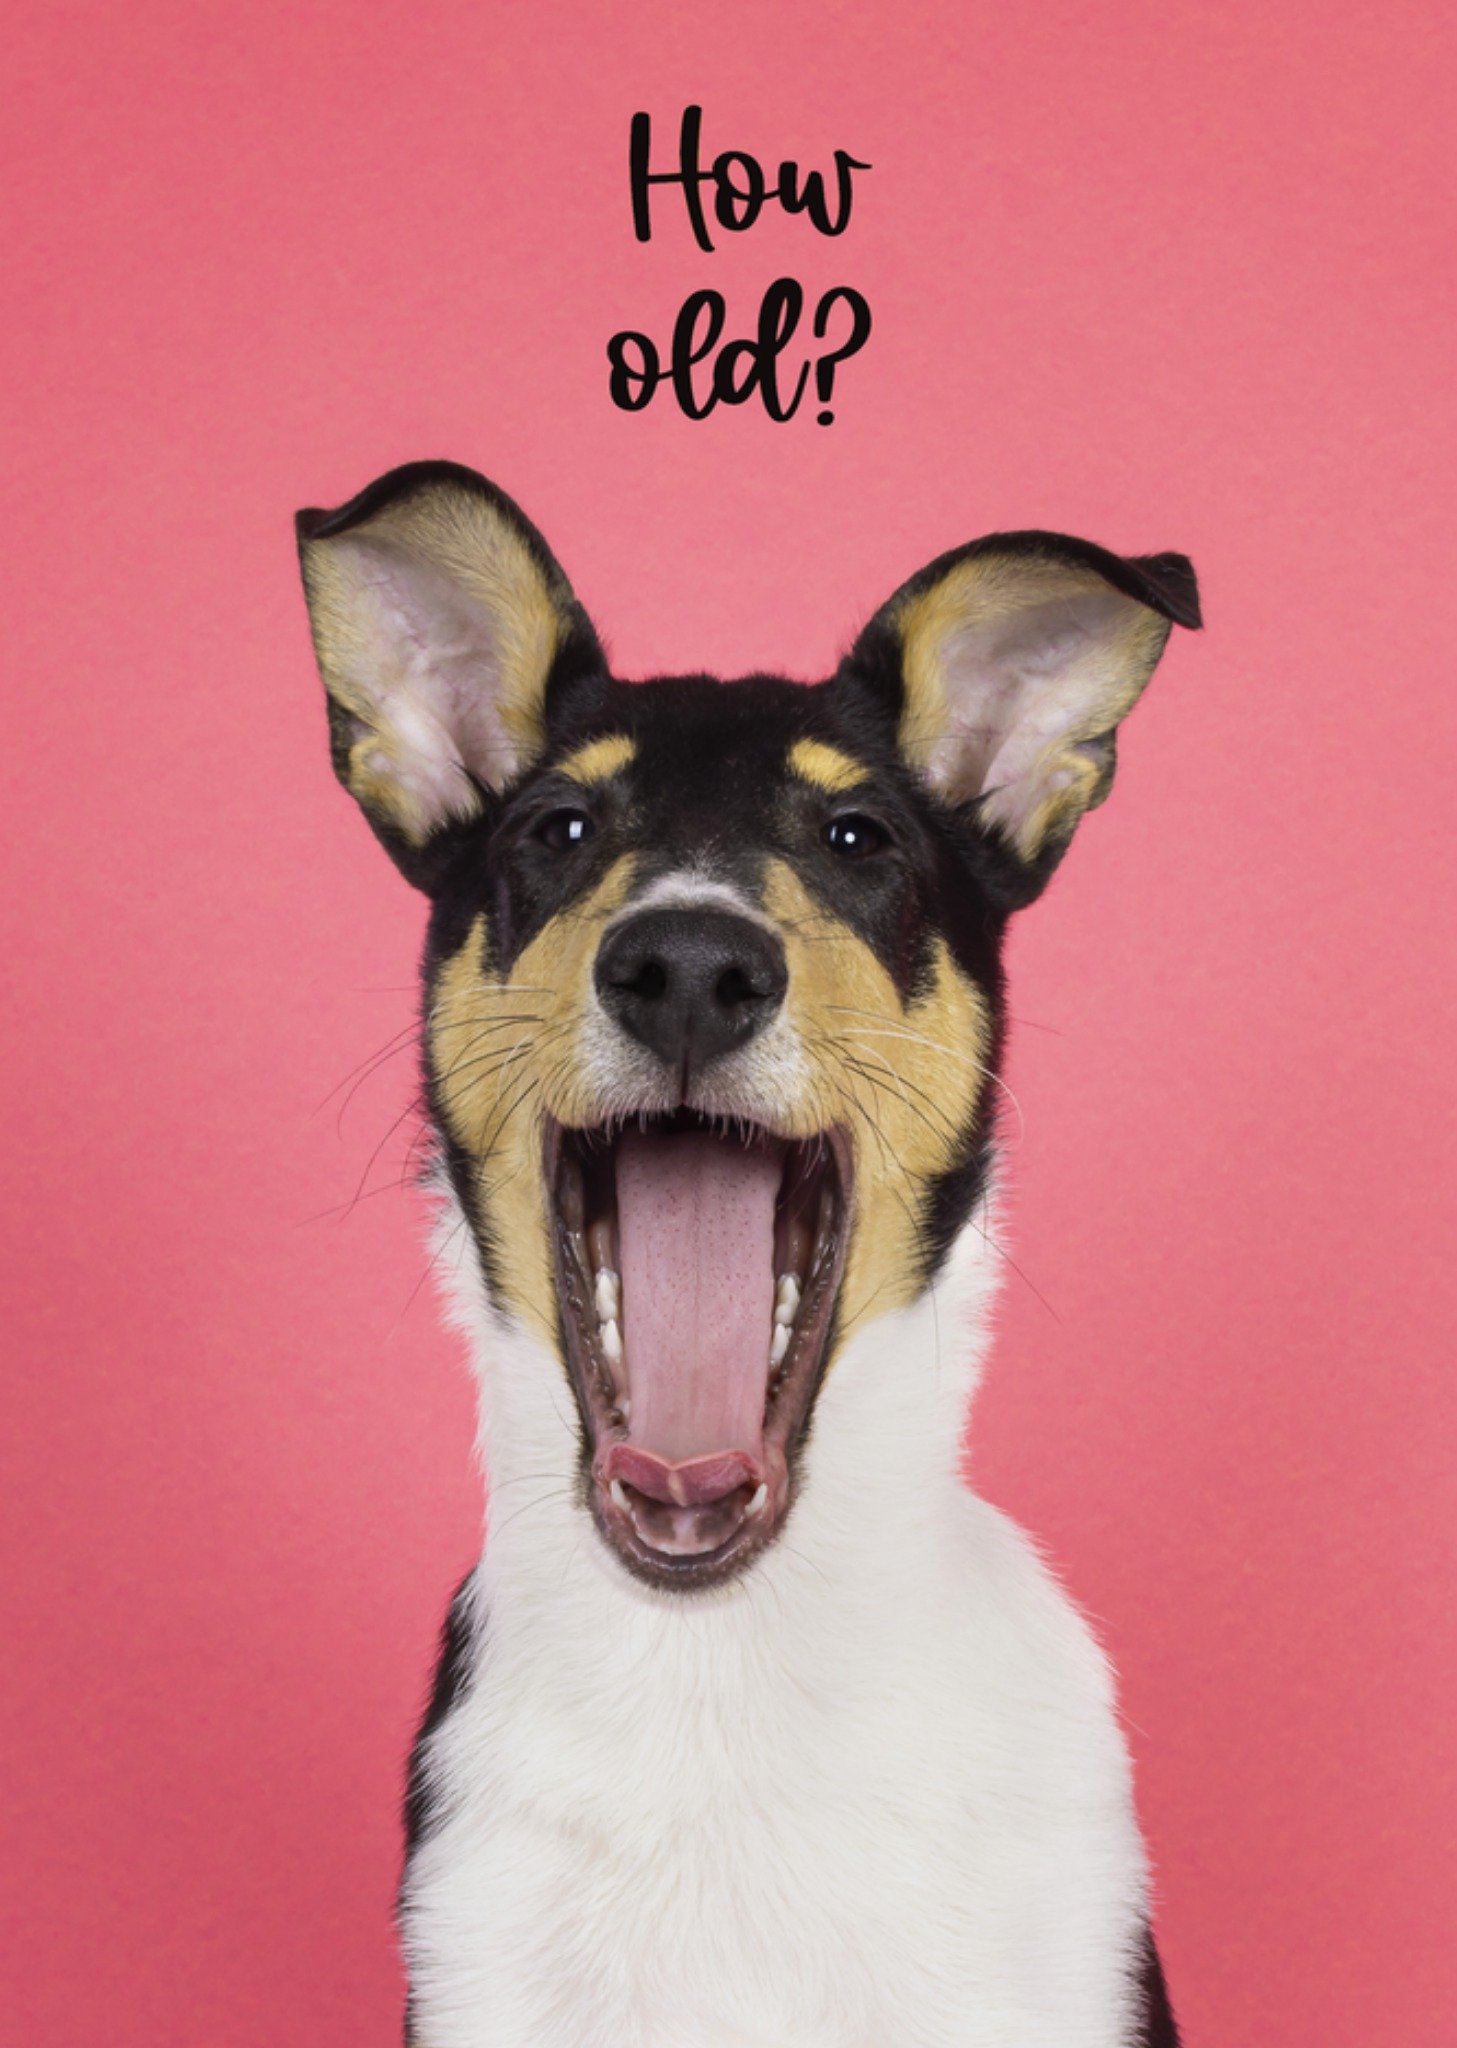 Catchy Images - Verjaardagskaart - hondje